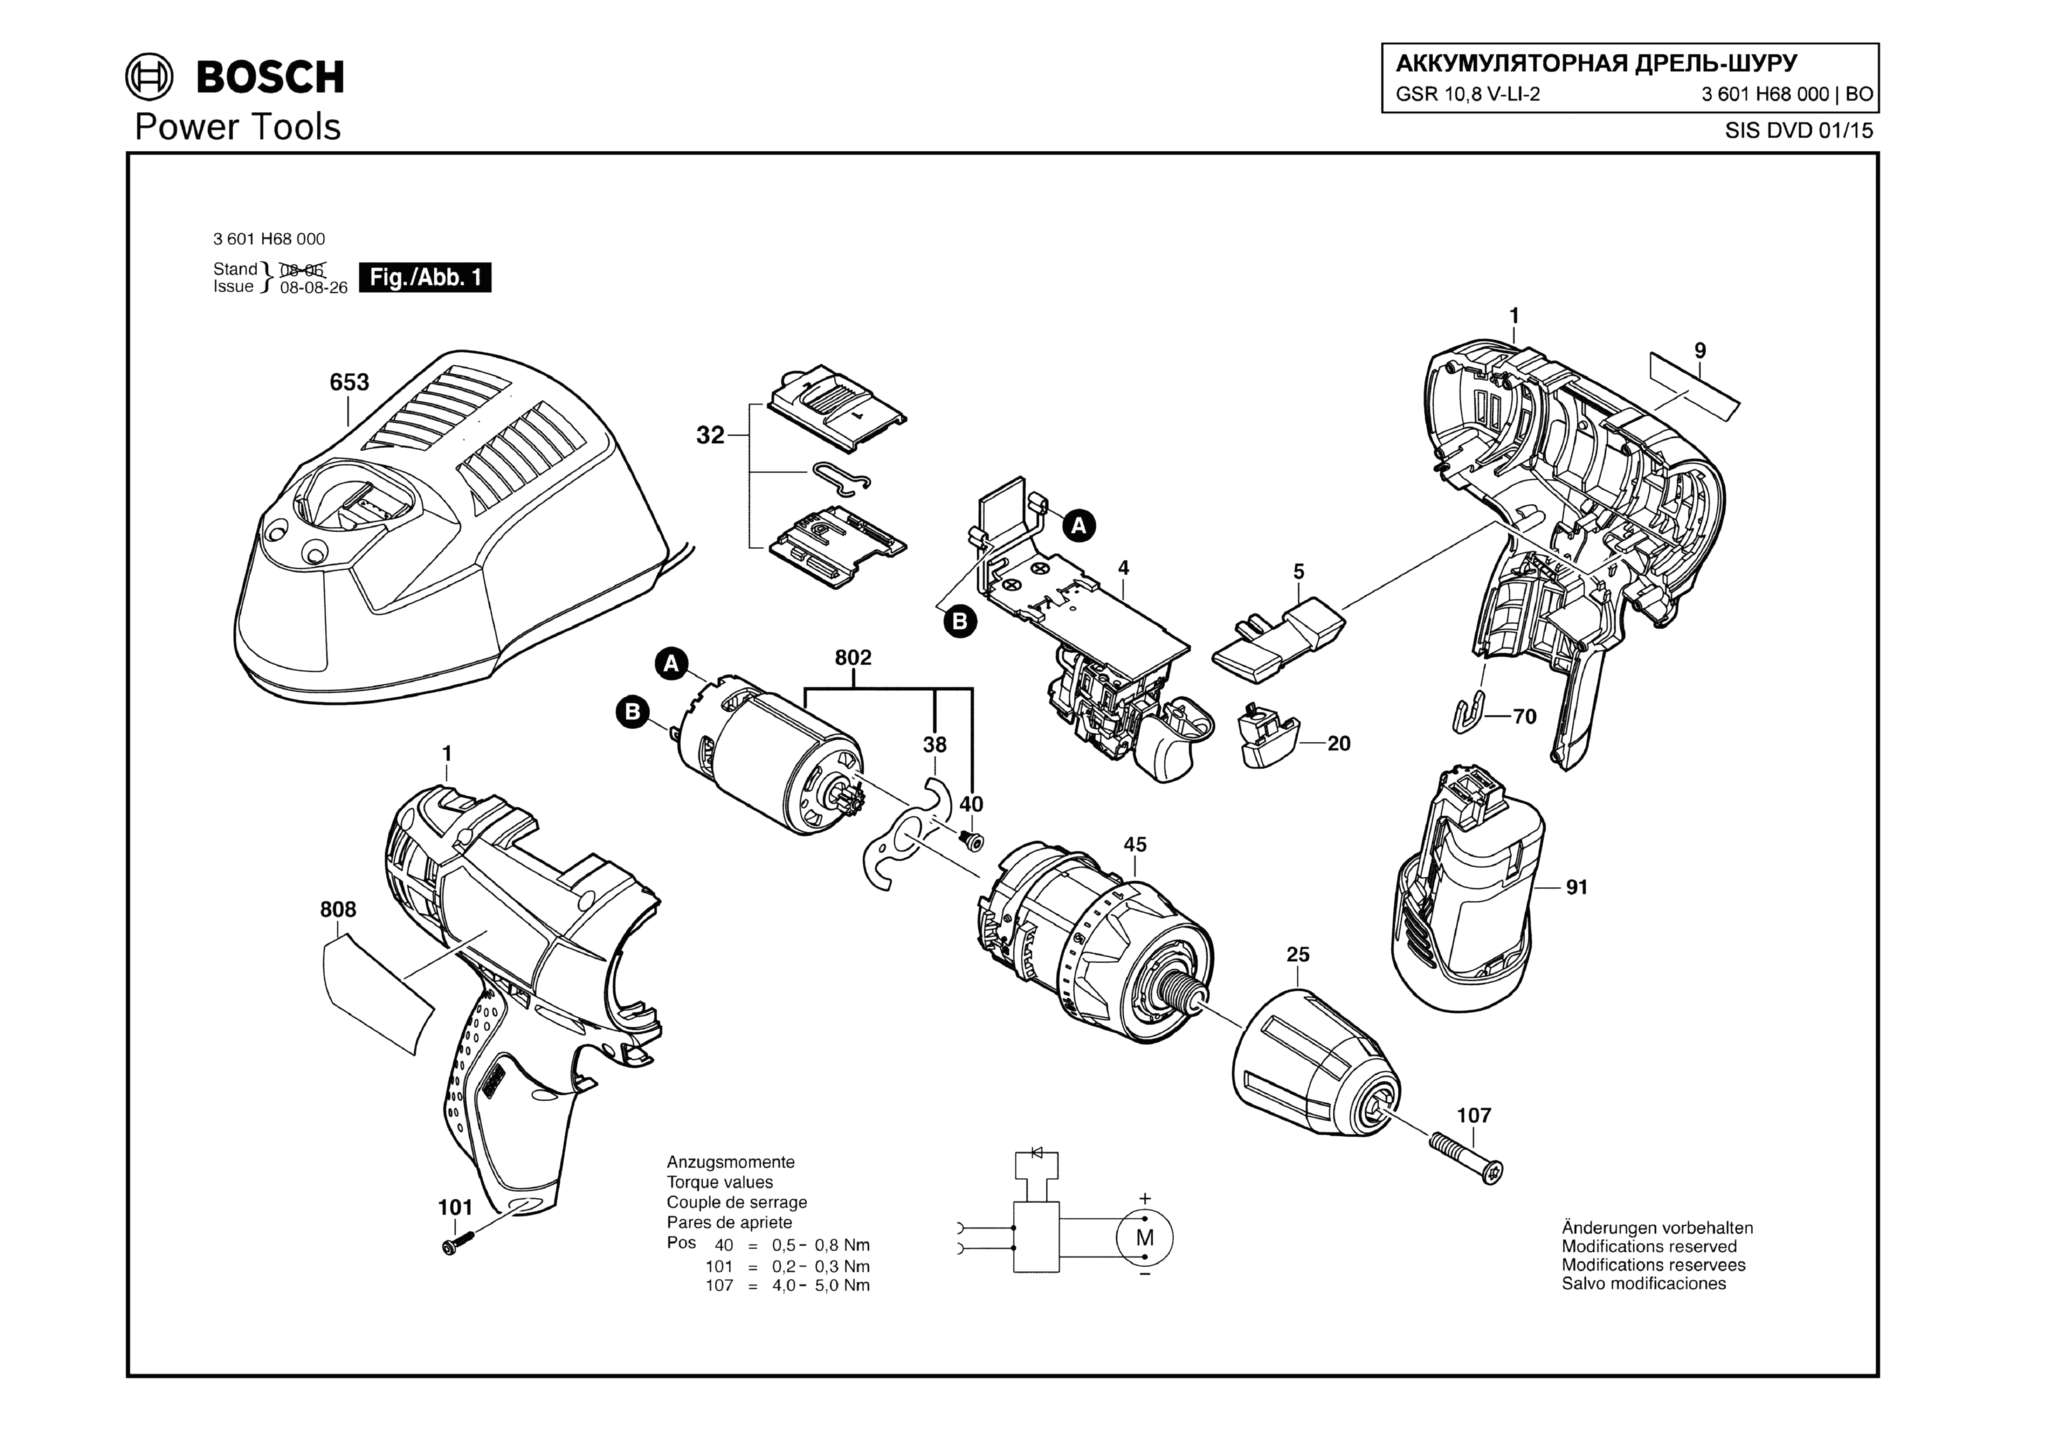 Запчасти, схема и деталировка Bosch GSR 10,8 V-LI-2 (ТИП 3601H68000)